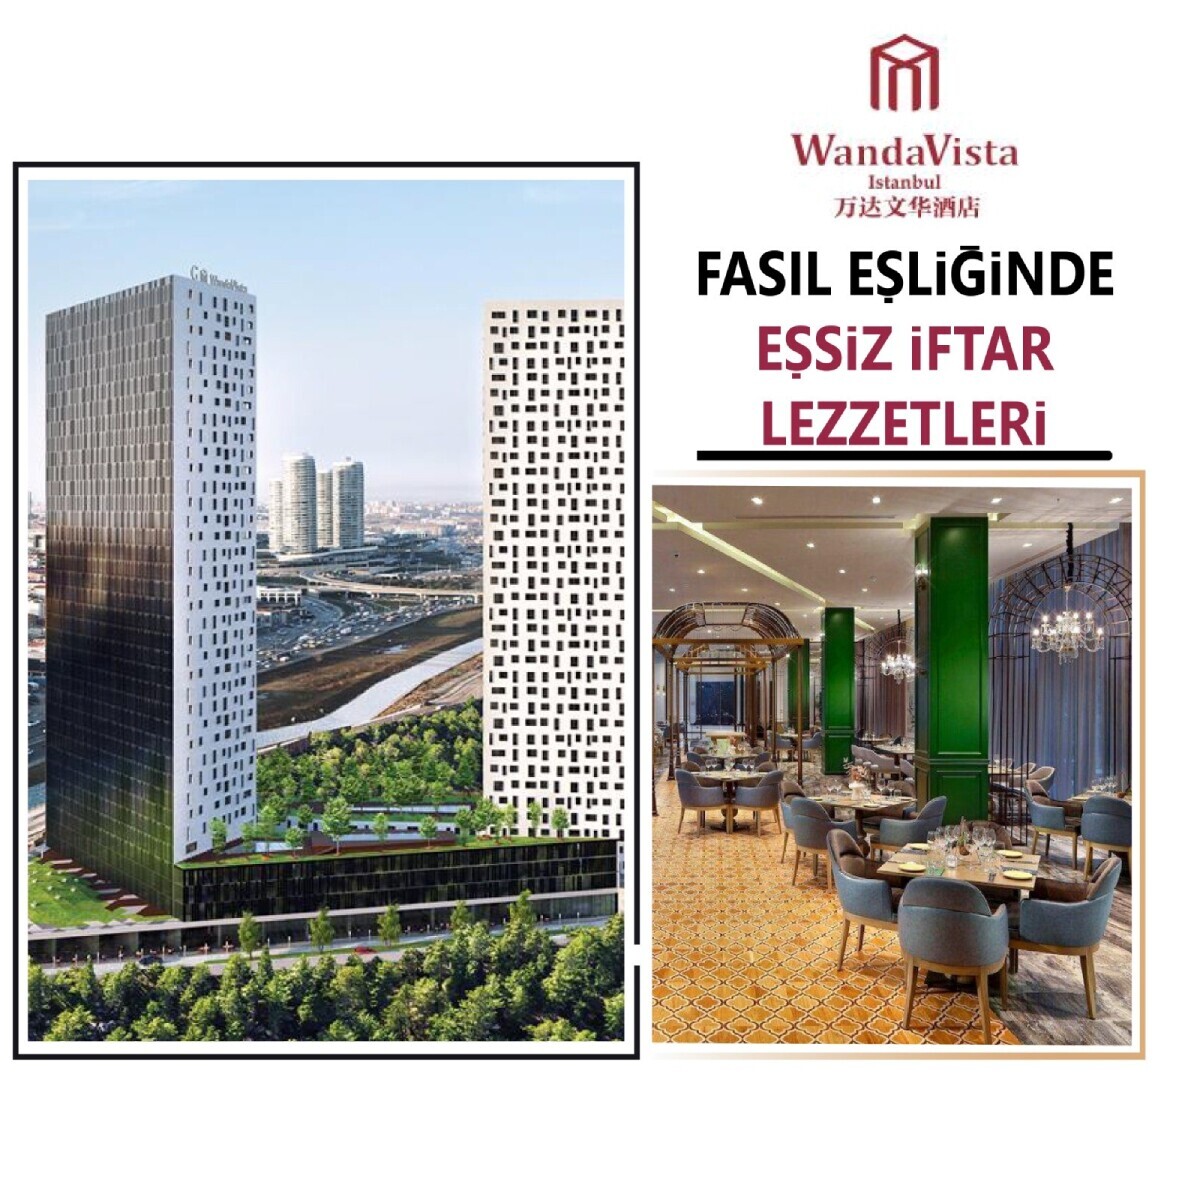 Wanda Vista İstanbul Hotel’de Canlı Fasıl Eşliğinde Unutulmaz İftar Lezzetleri